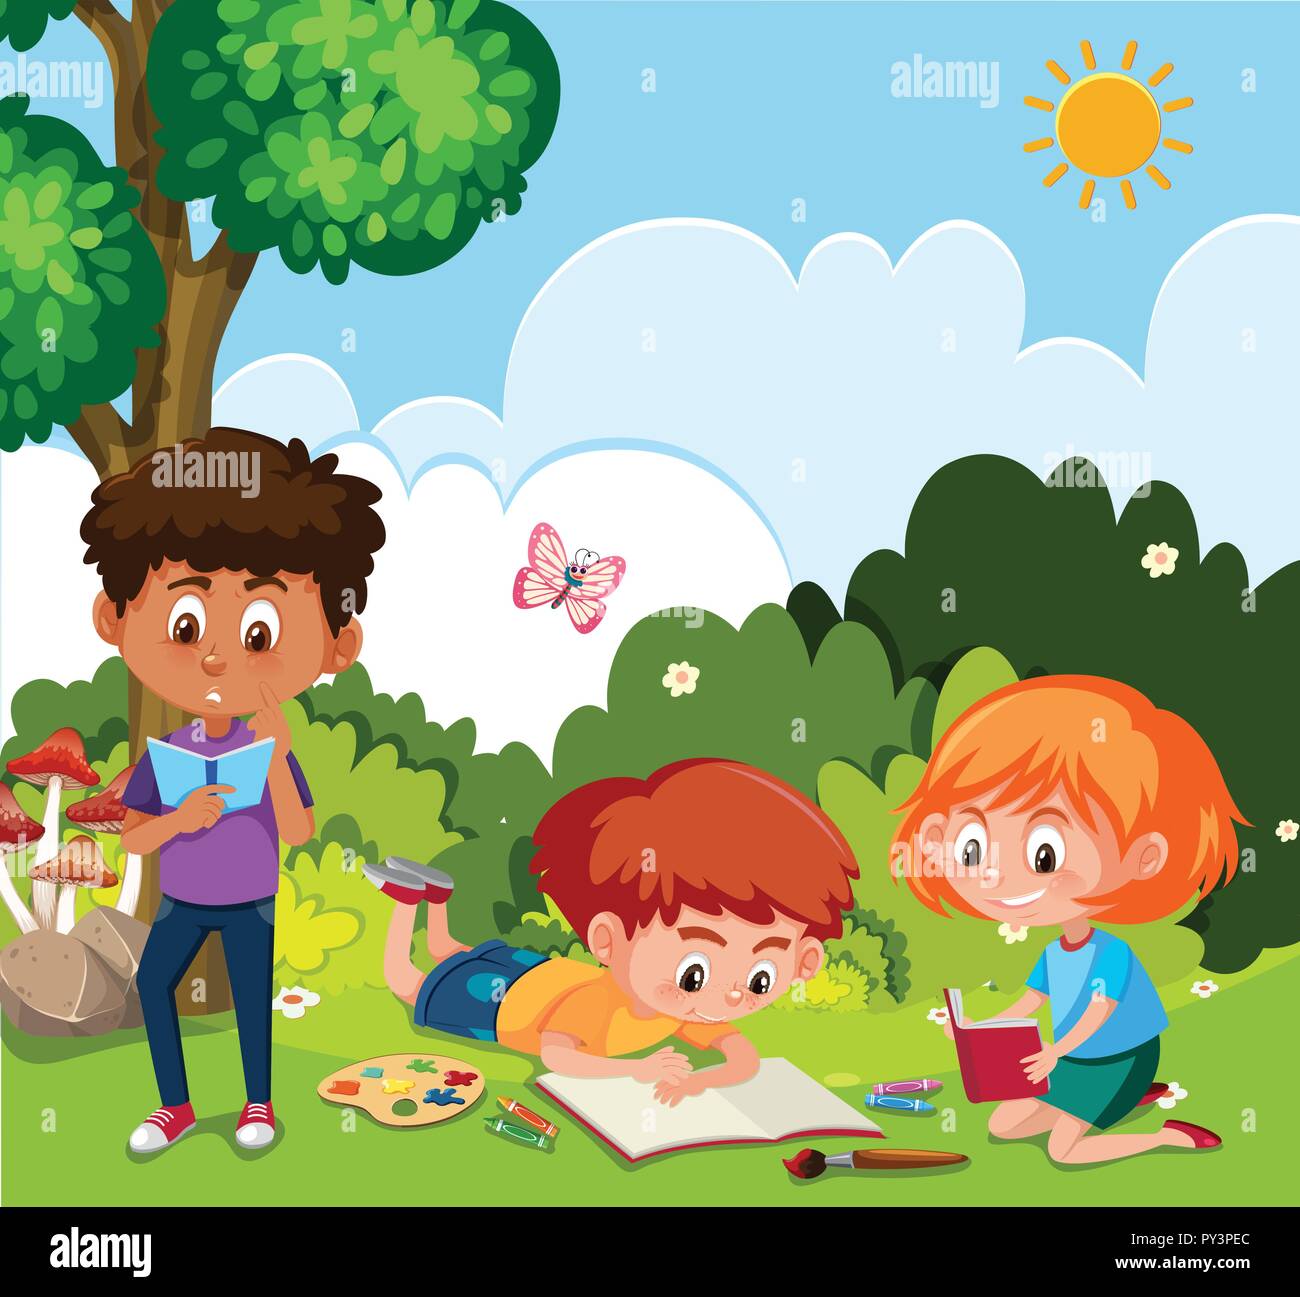 Disegno per bambini nella natura illustrazione Immagine e Vettoriale - Alamy